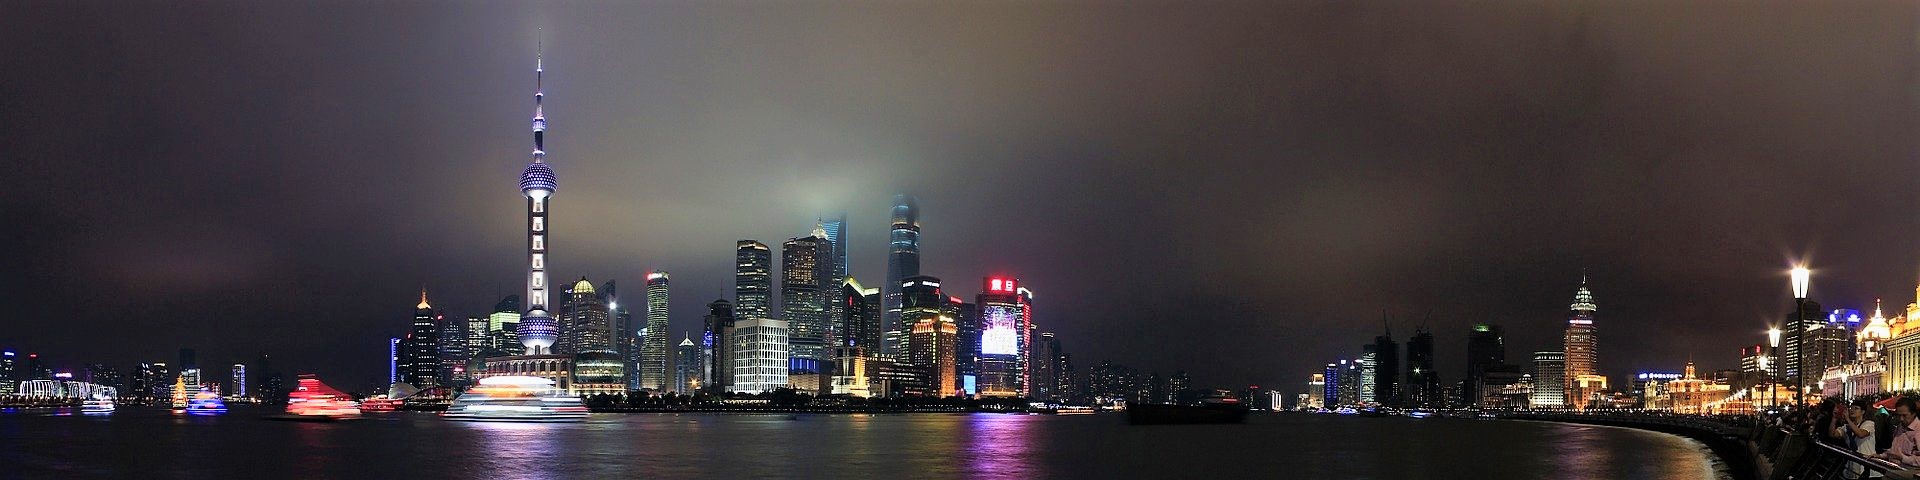 Shanghai|上海